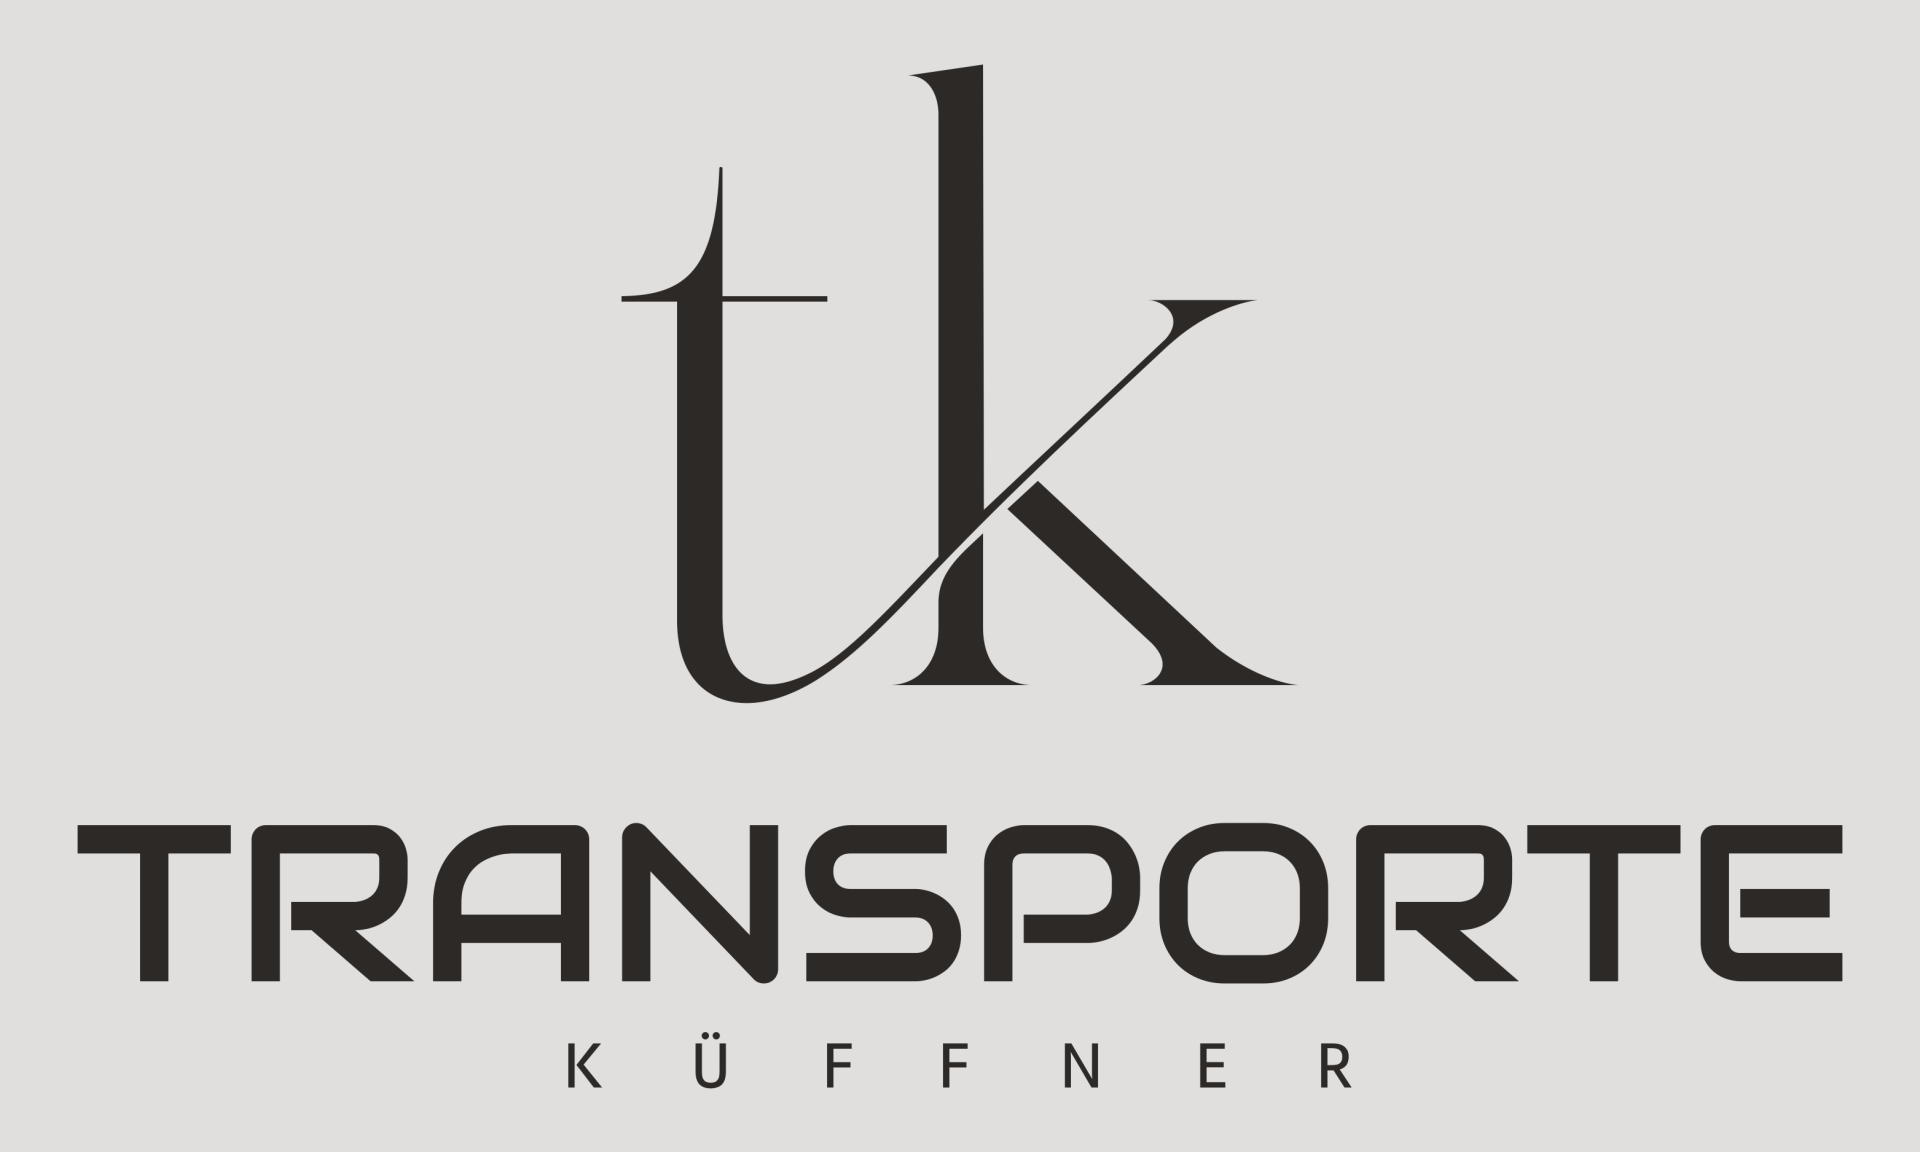 Transporte Küffner mit geschlossenen Fahrzeugtransporten von Prototypen und Luxusautos